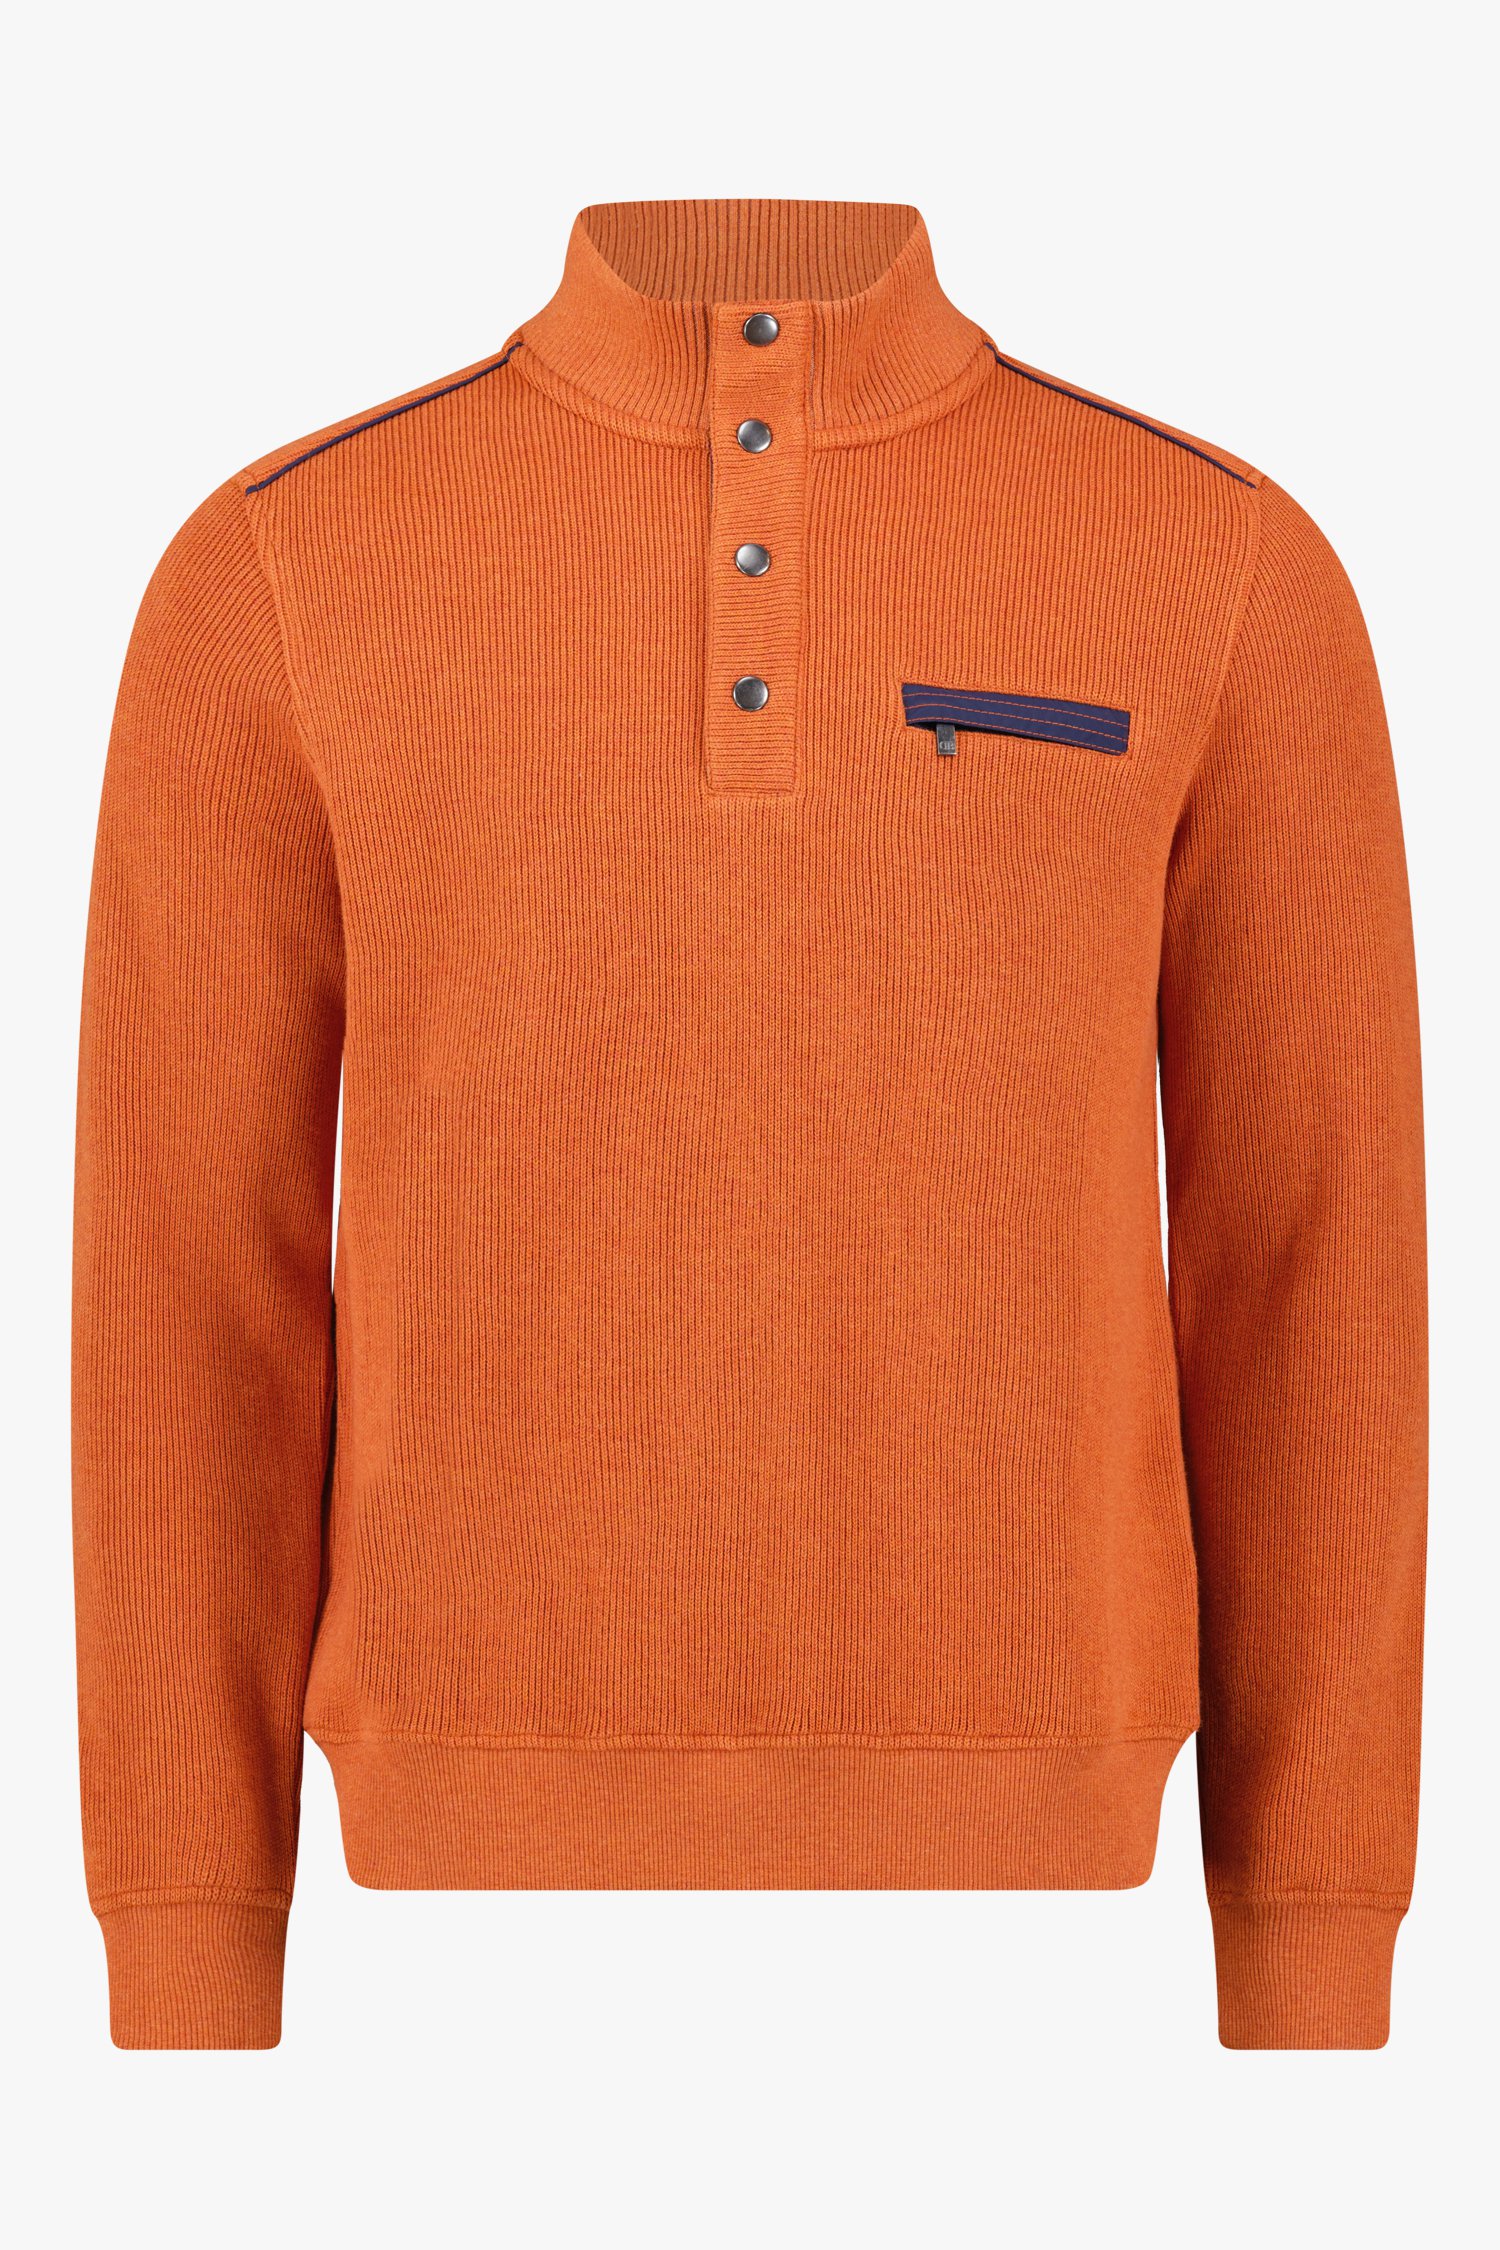 Oranje/rode trui van Dansaert Blue voor Heren